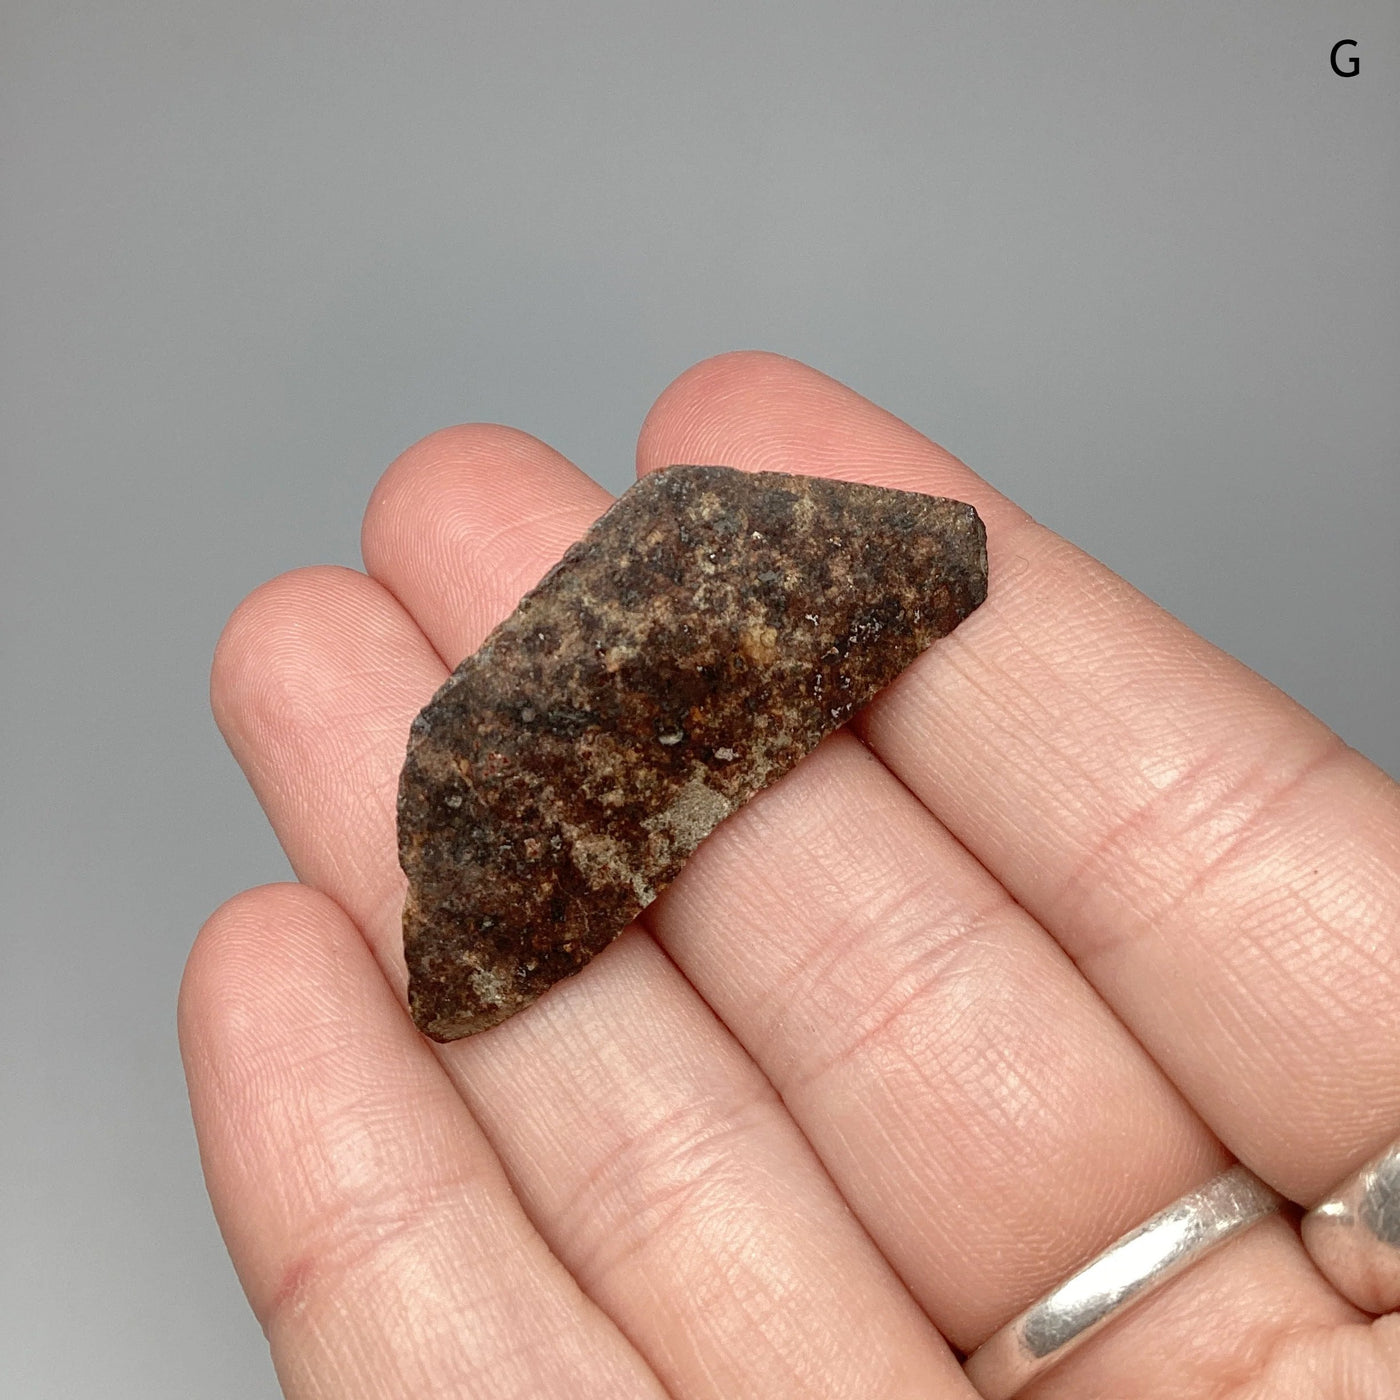 Chondrite Meteorite Specimen